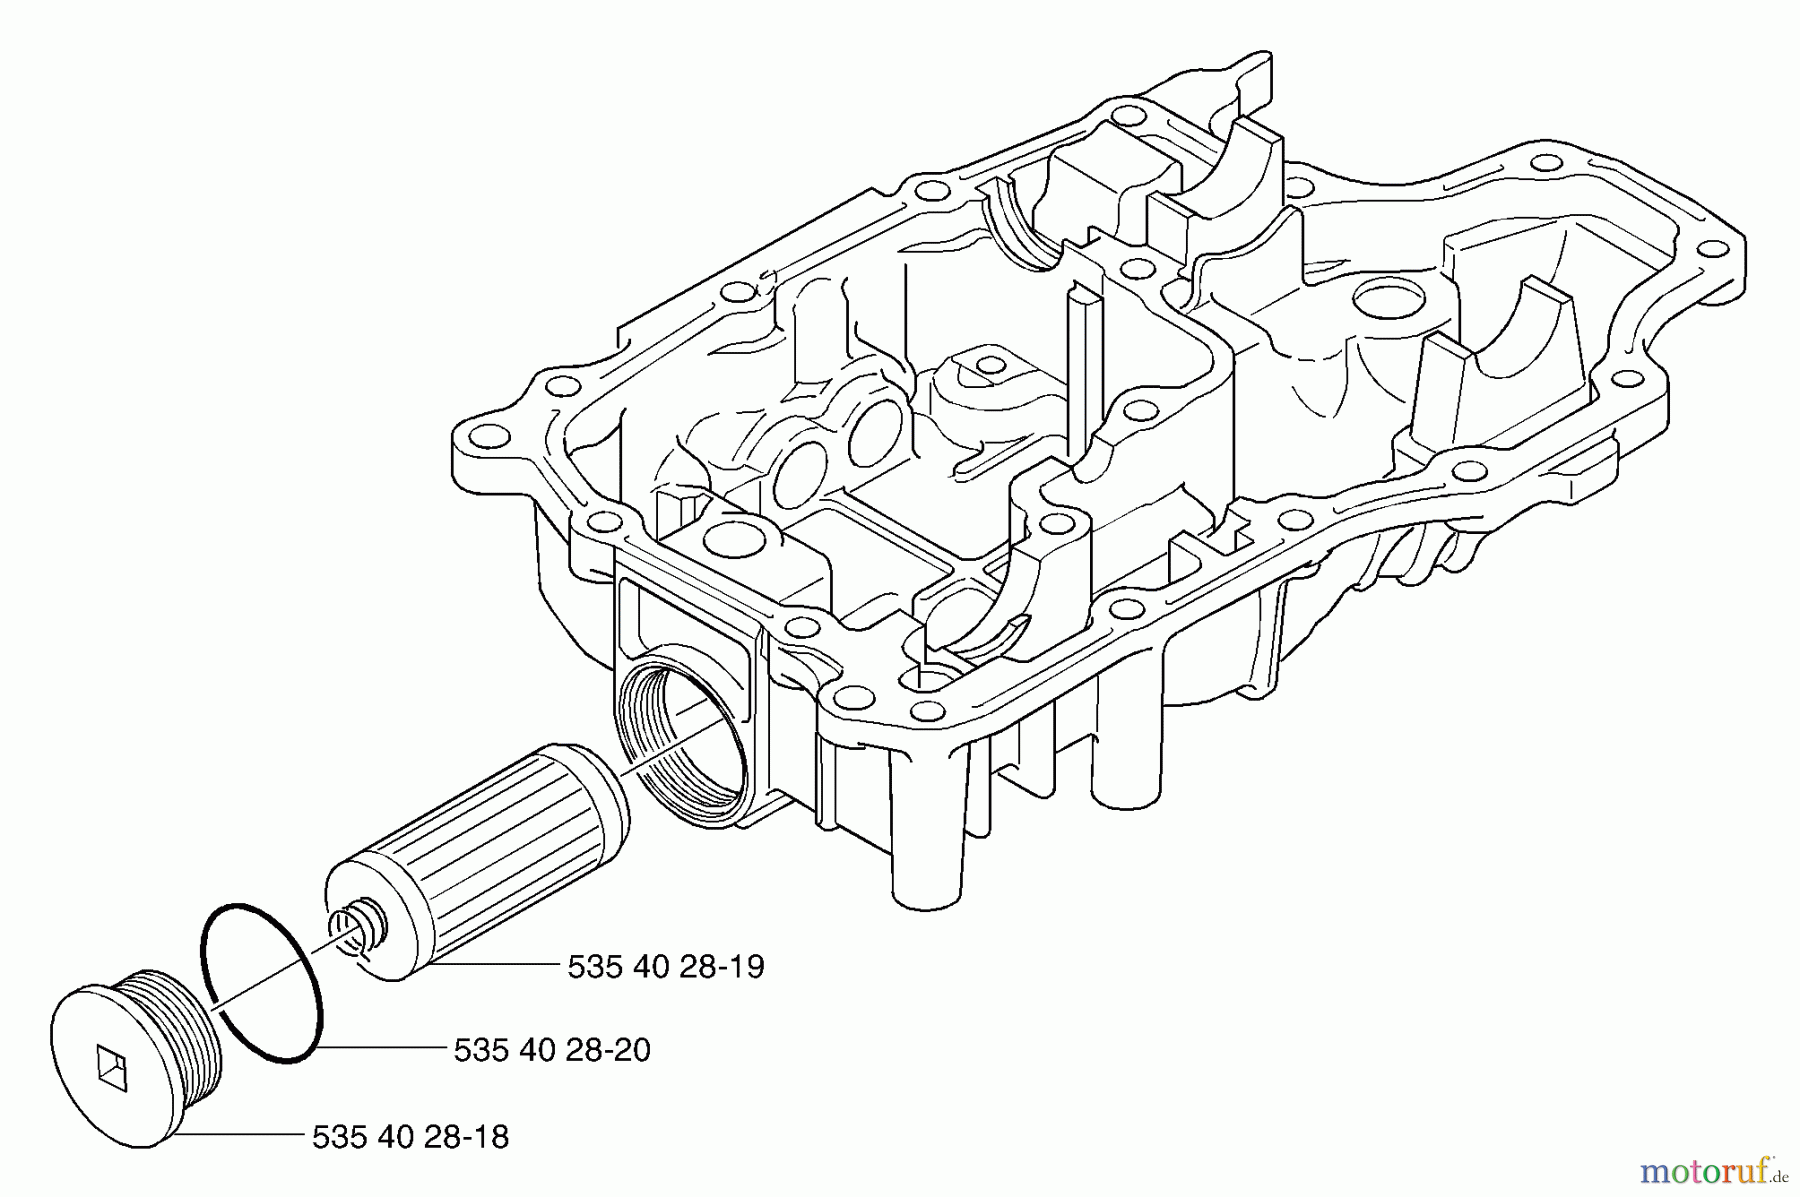  Husqvarna Motoren K 66 - Tuff Torq Transmission (2002-06 & After) Plug